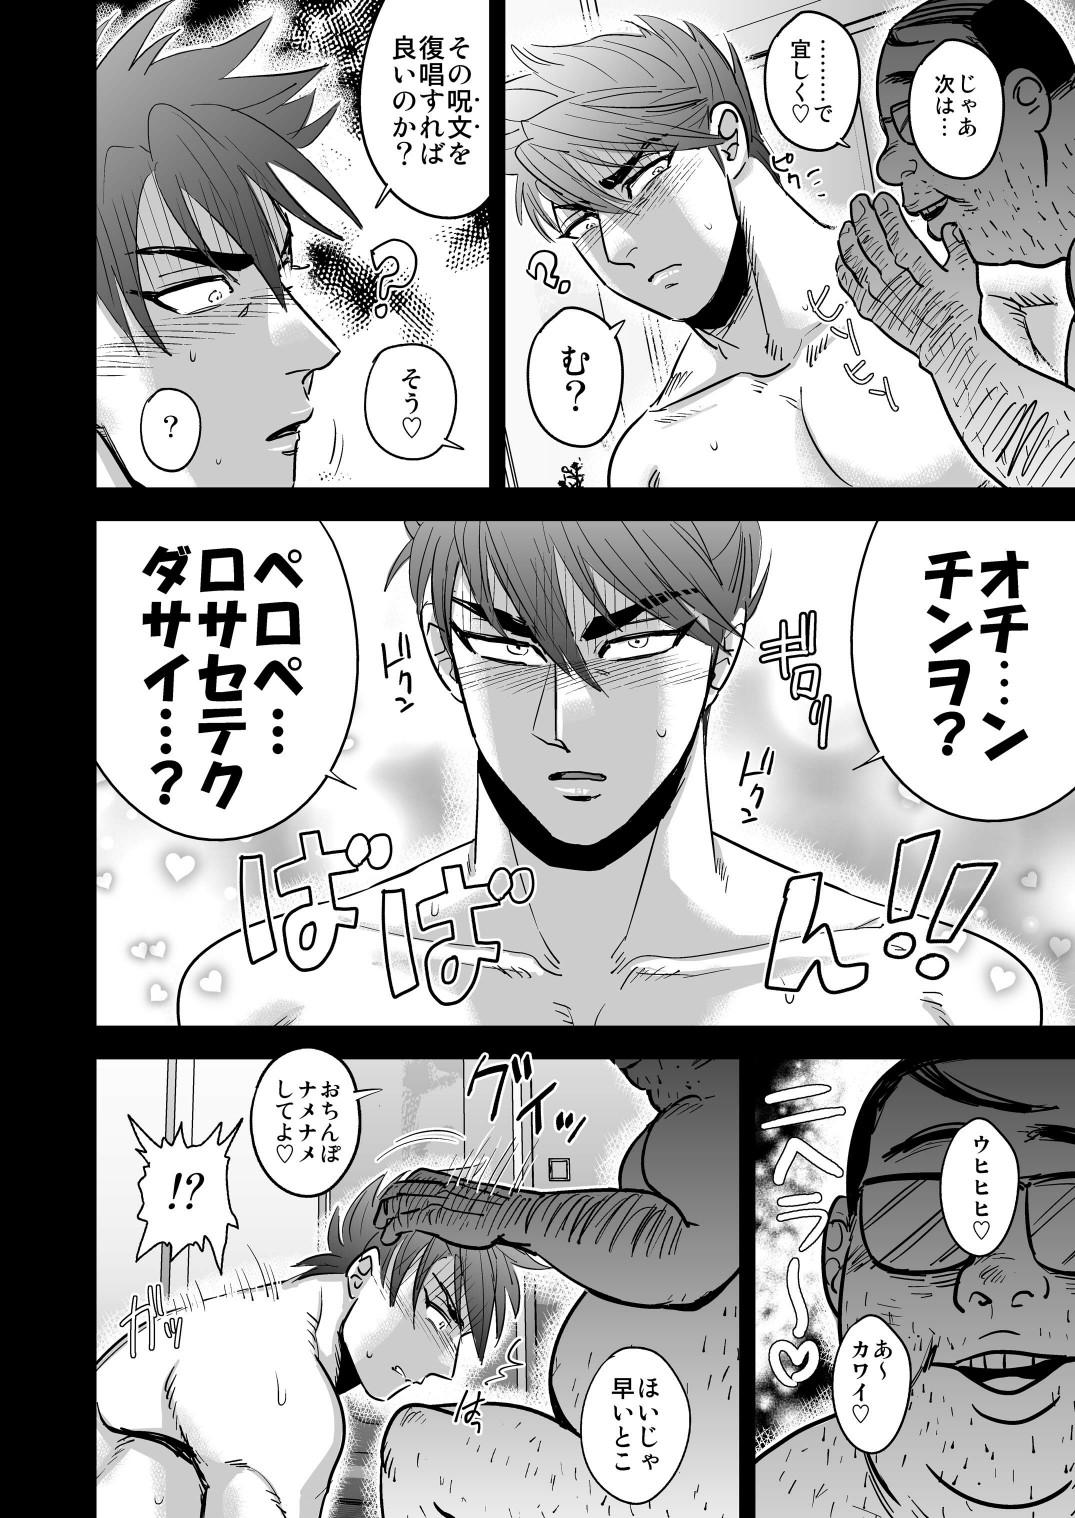 Gayfuck Kono Ookanehira o Kyouhaku shite Doujinshi o Tsukurimashita - Touken ranbu Ginger - Page 10